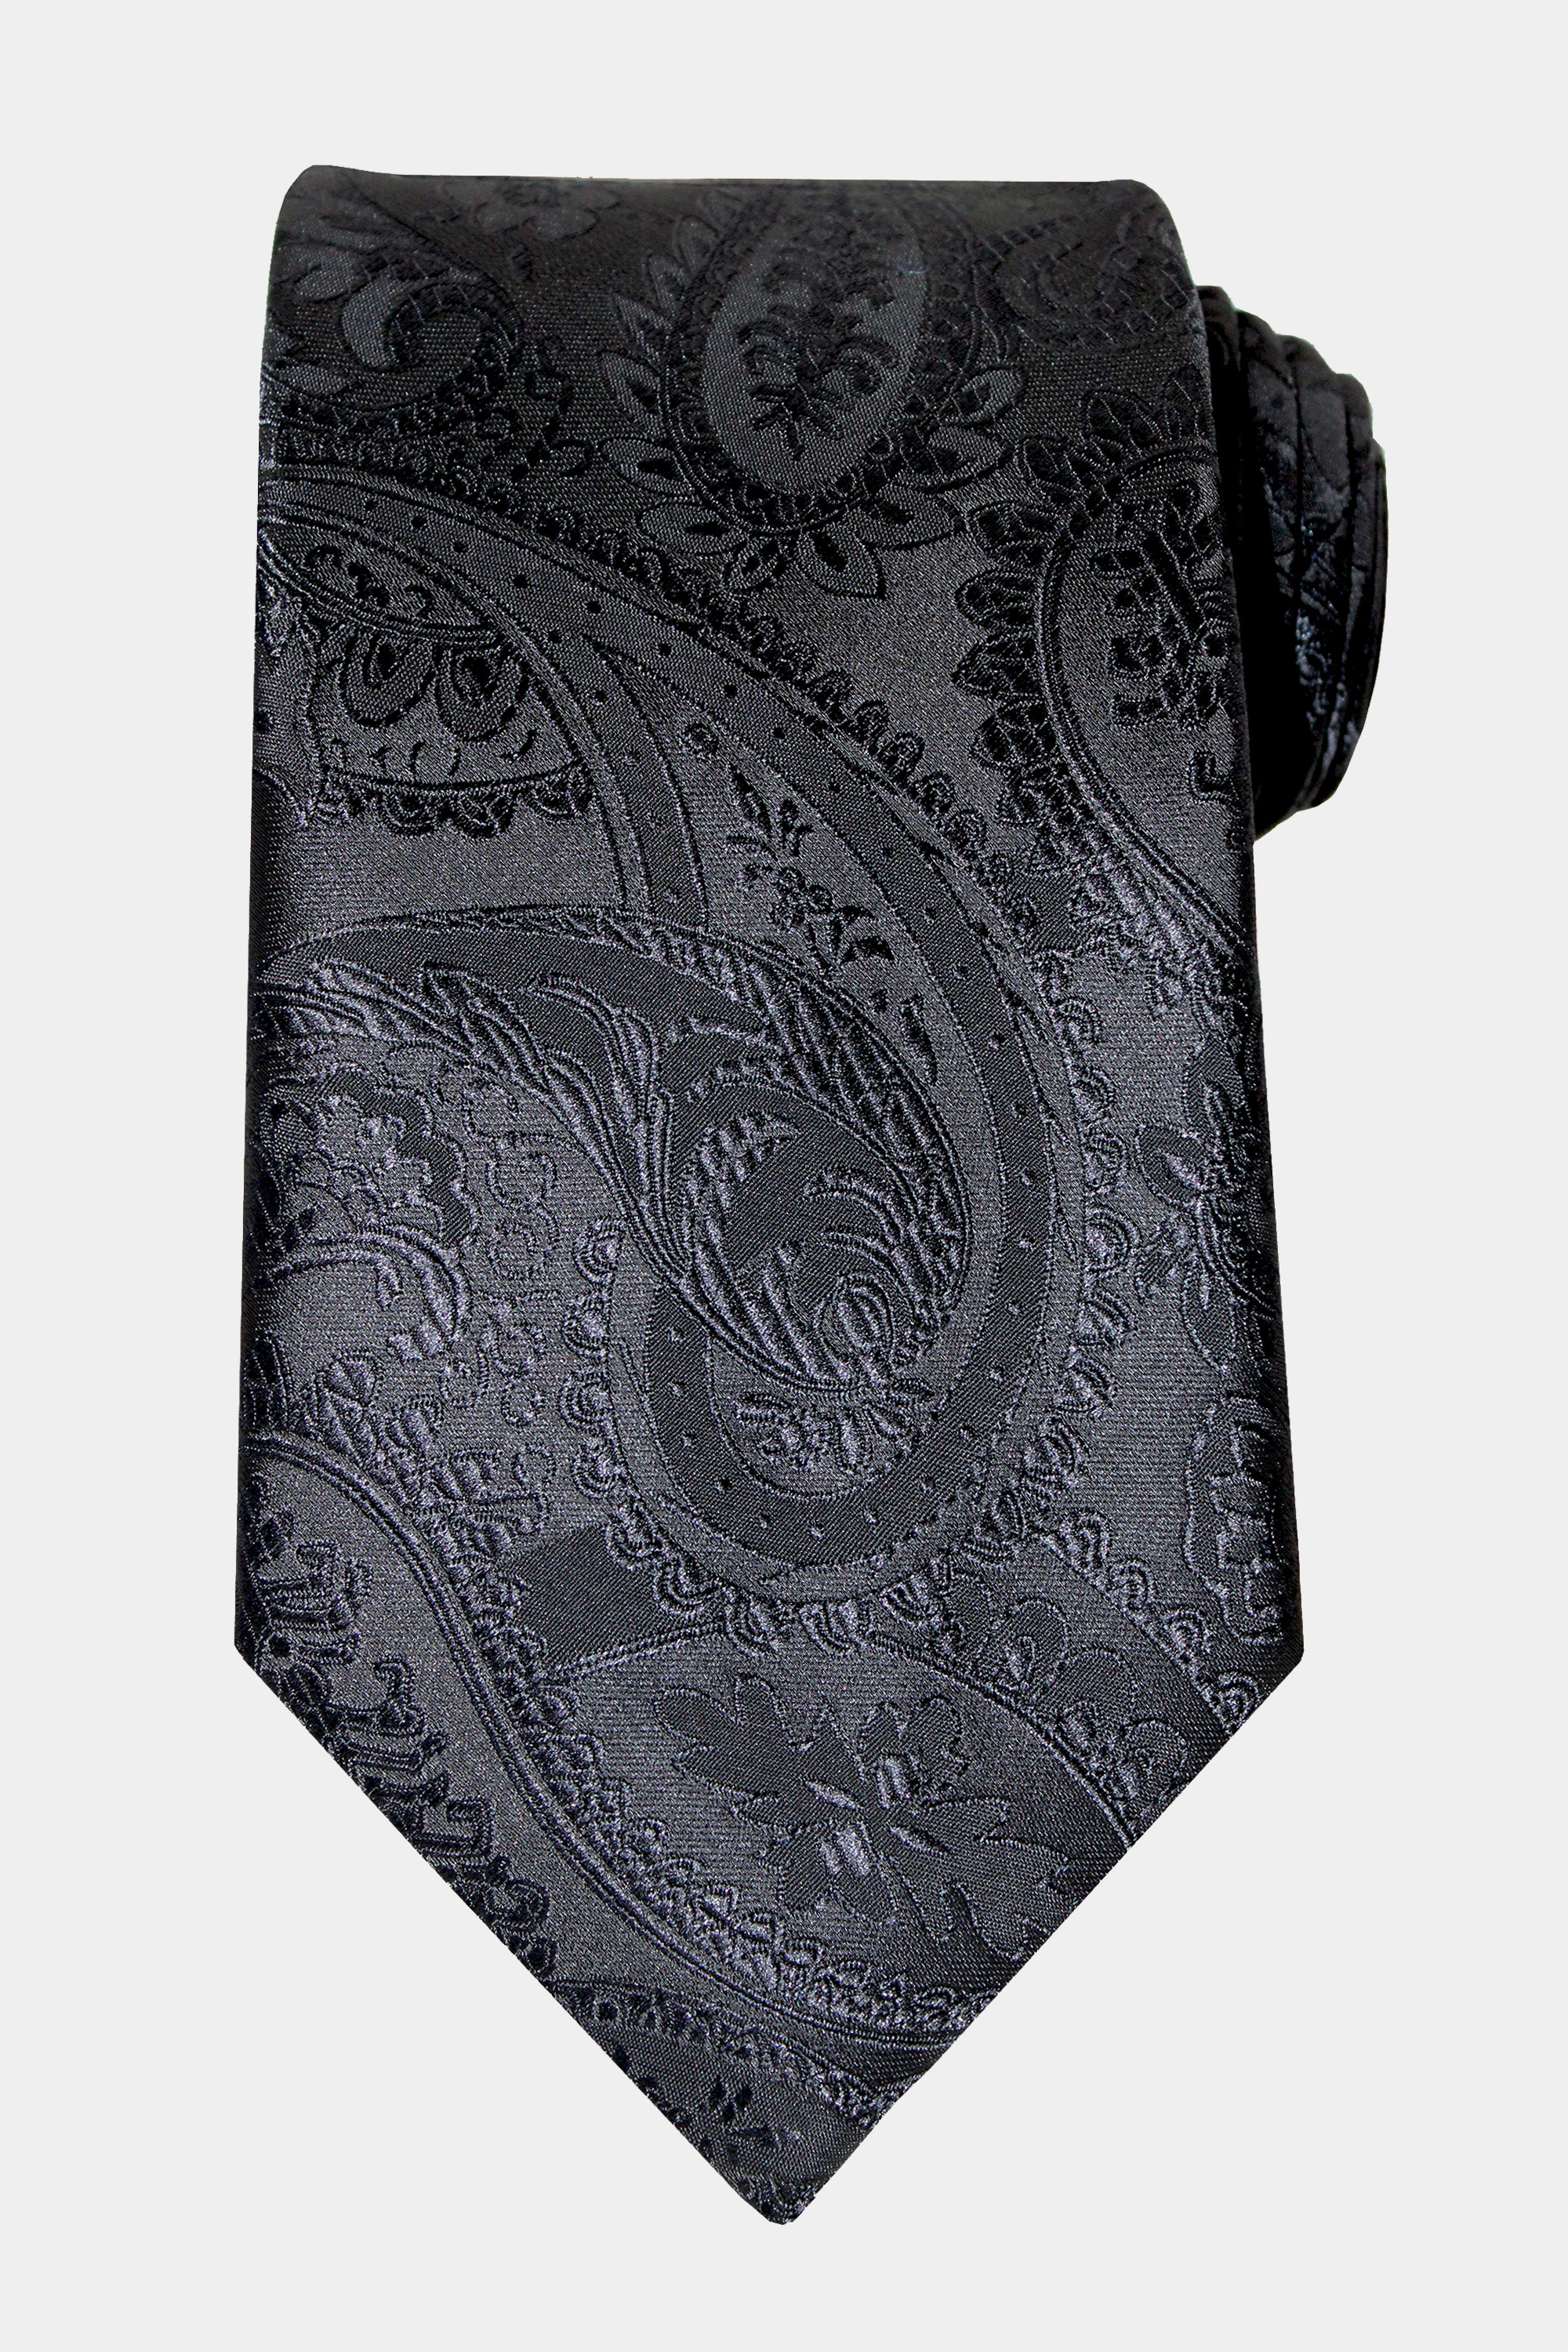 Black-Paisley-Tie-from-Gentlemansguru.com_